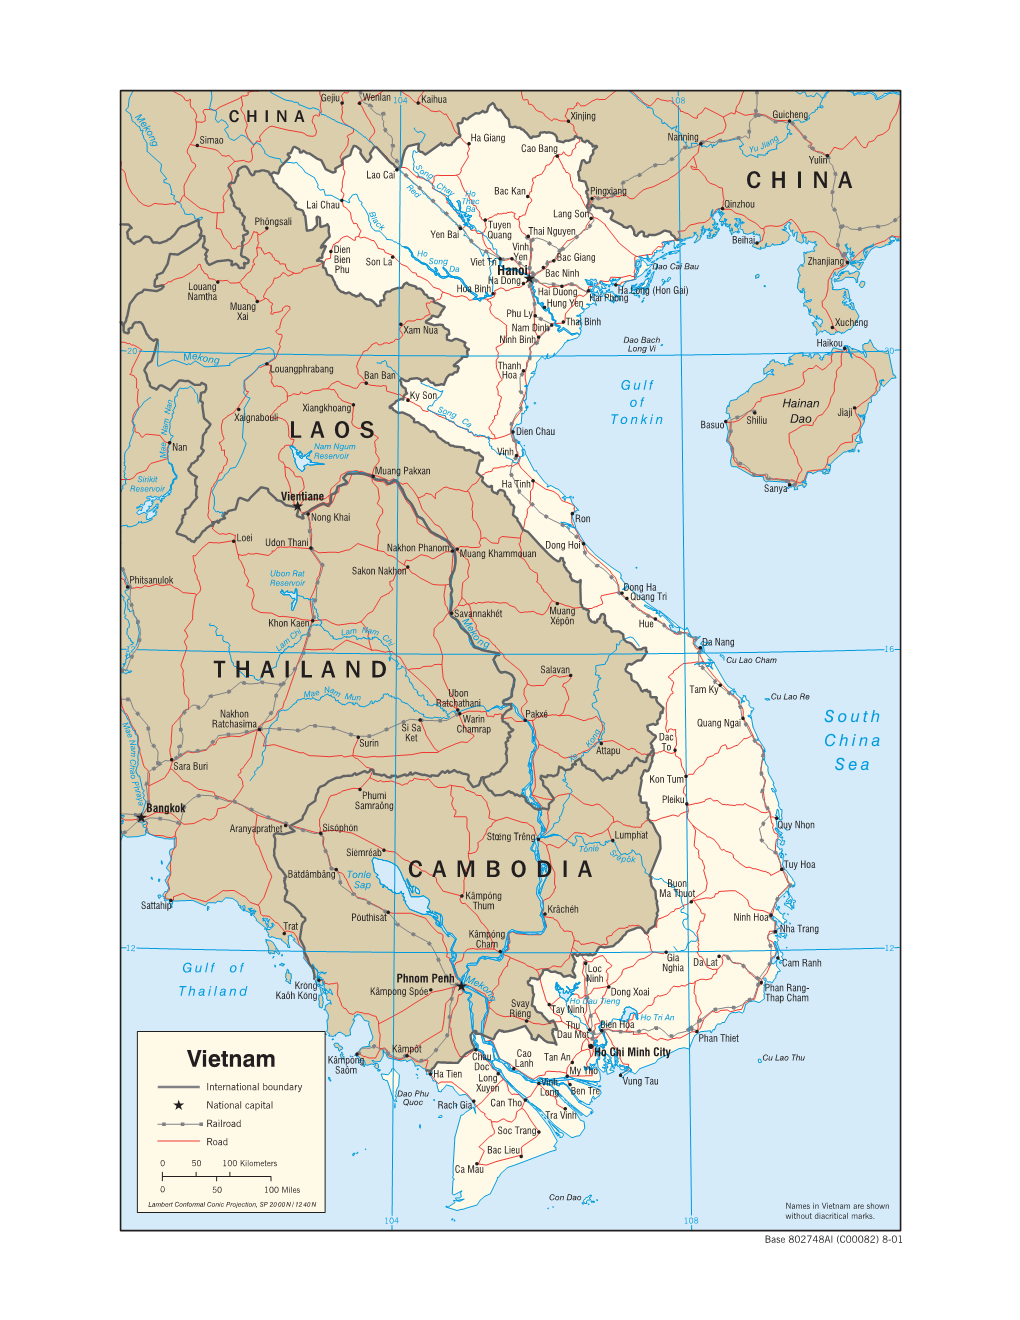 CAMBODIA THAILAND LAOS CHINA Vietnam